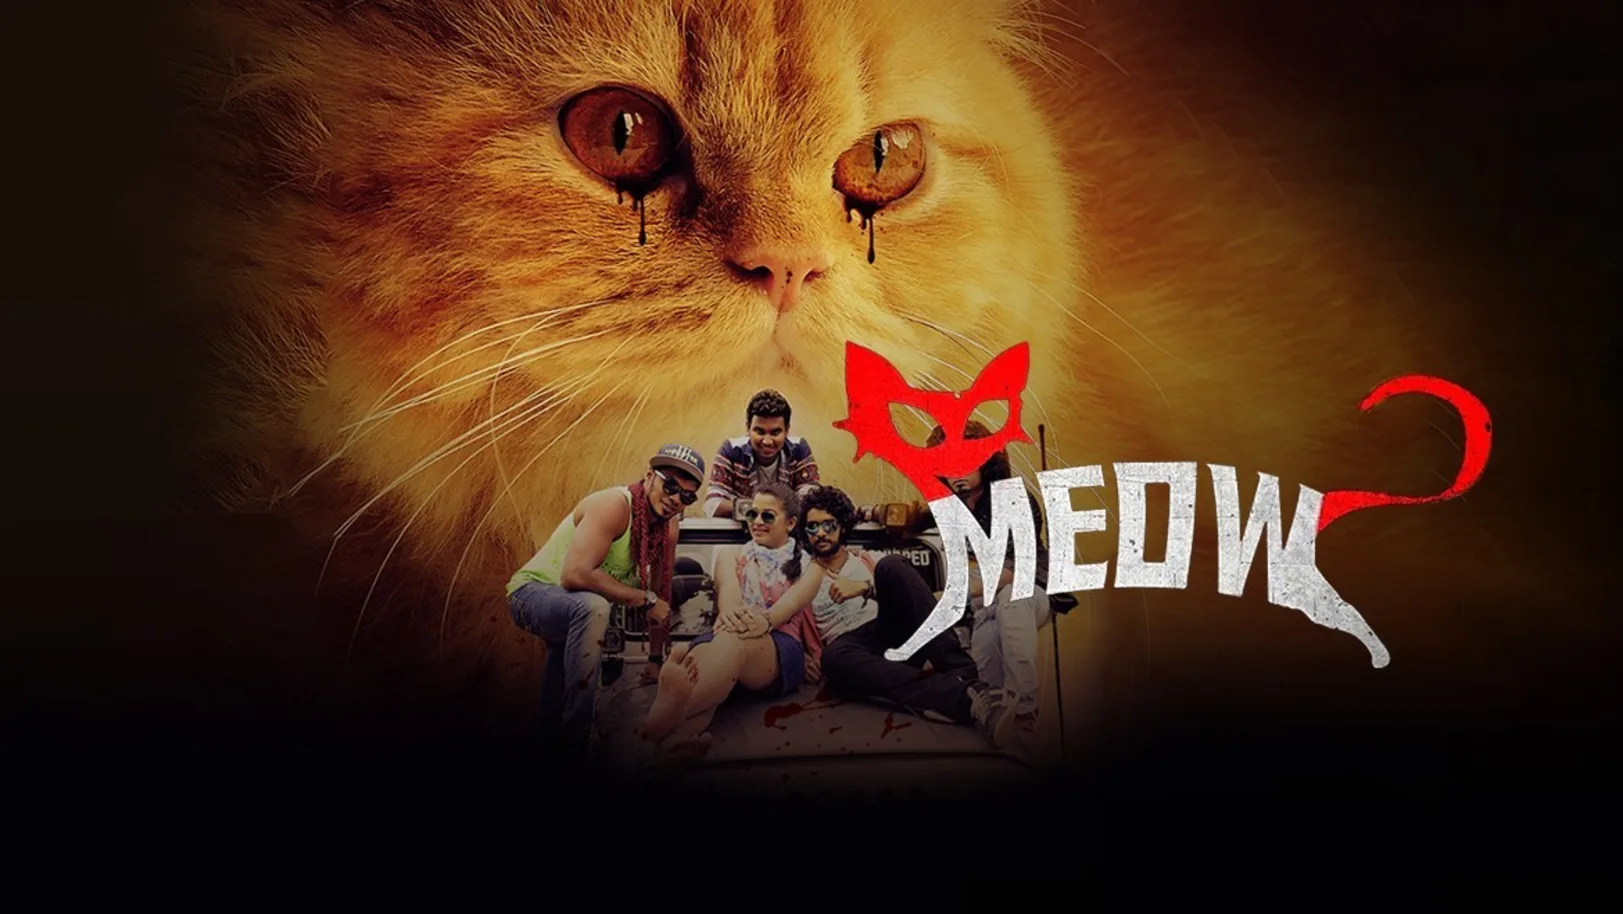 Meow Movie